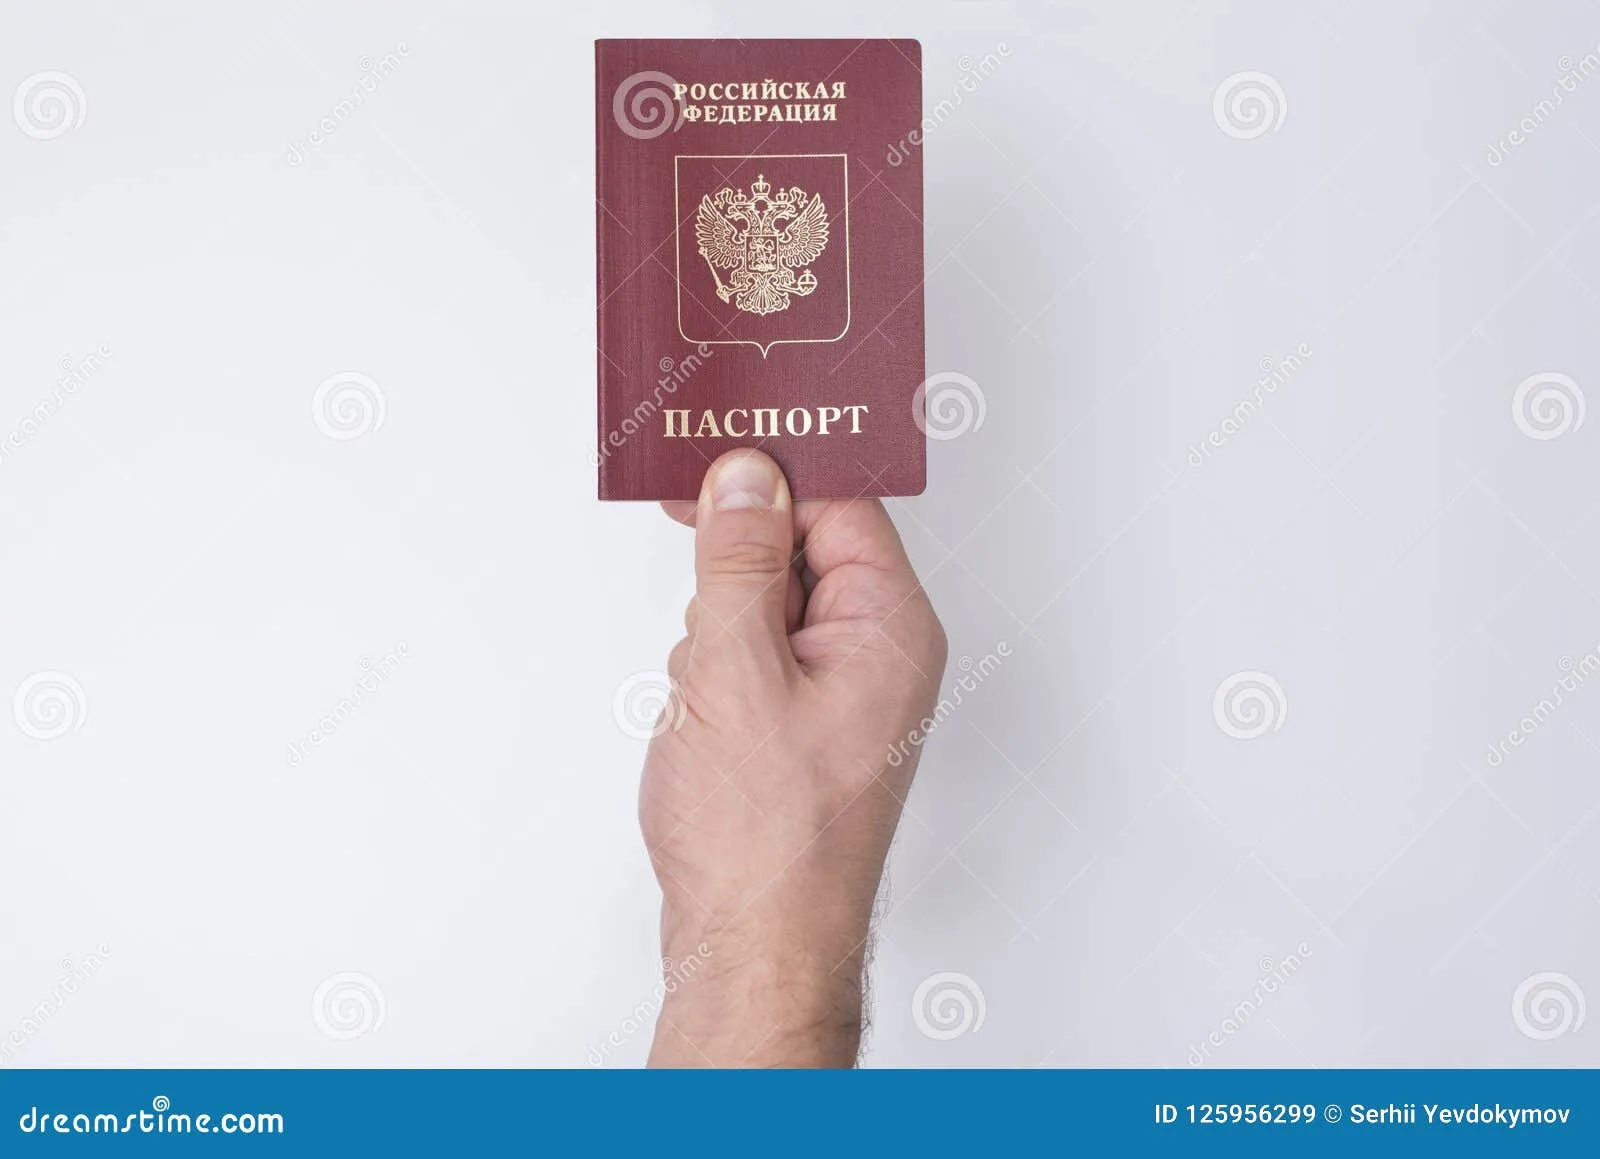 Фото Поздравление с паспортом #81